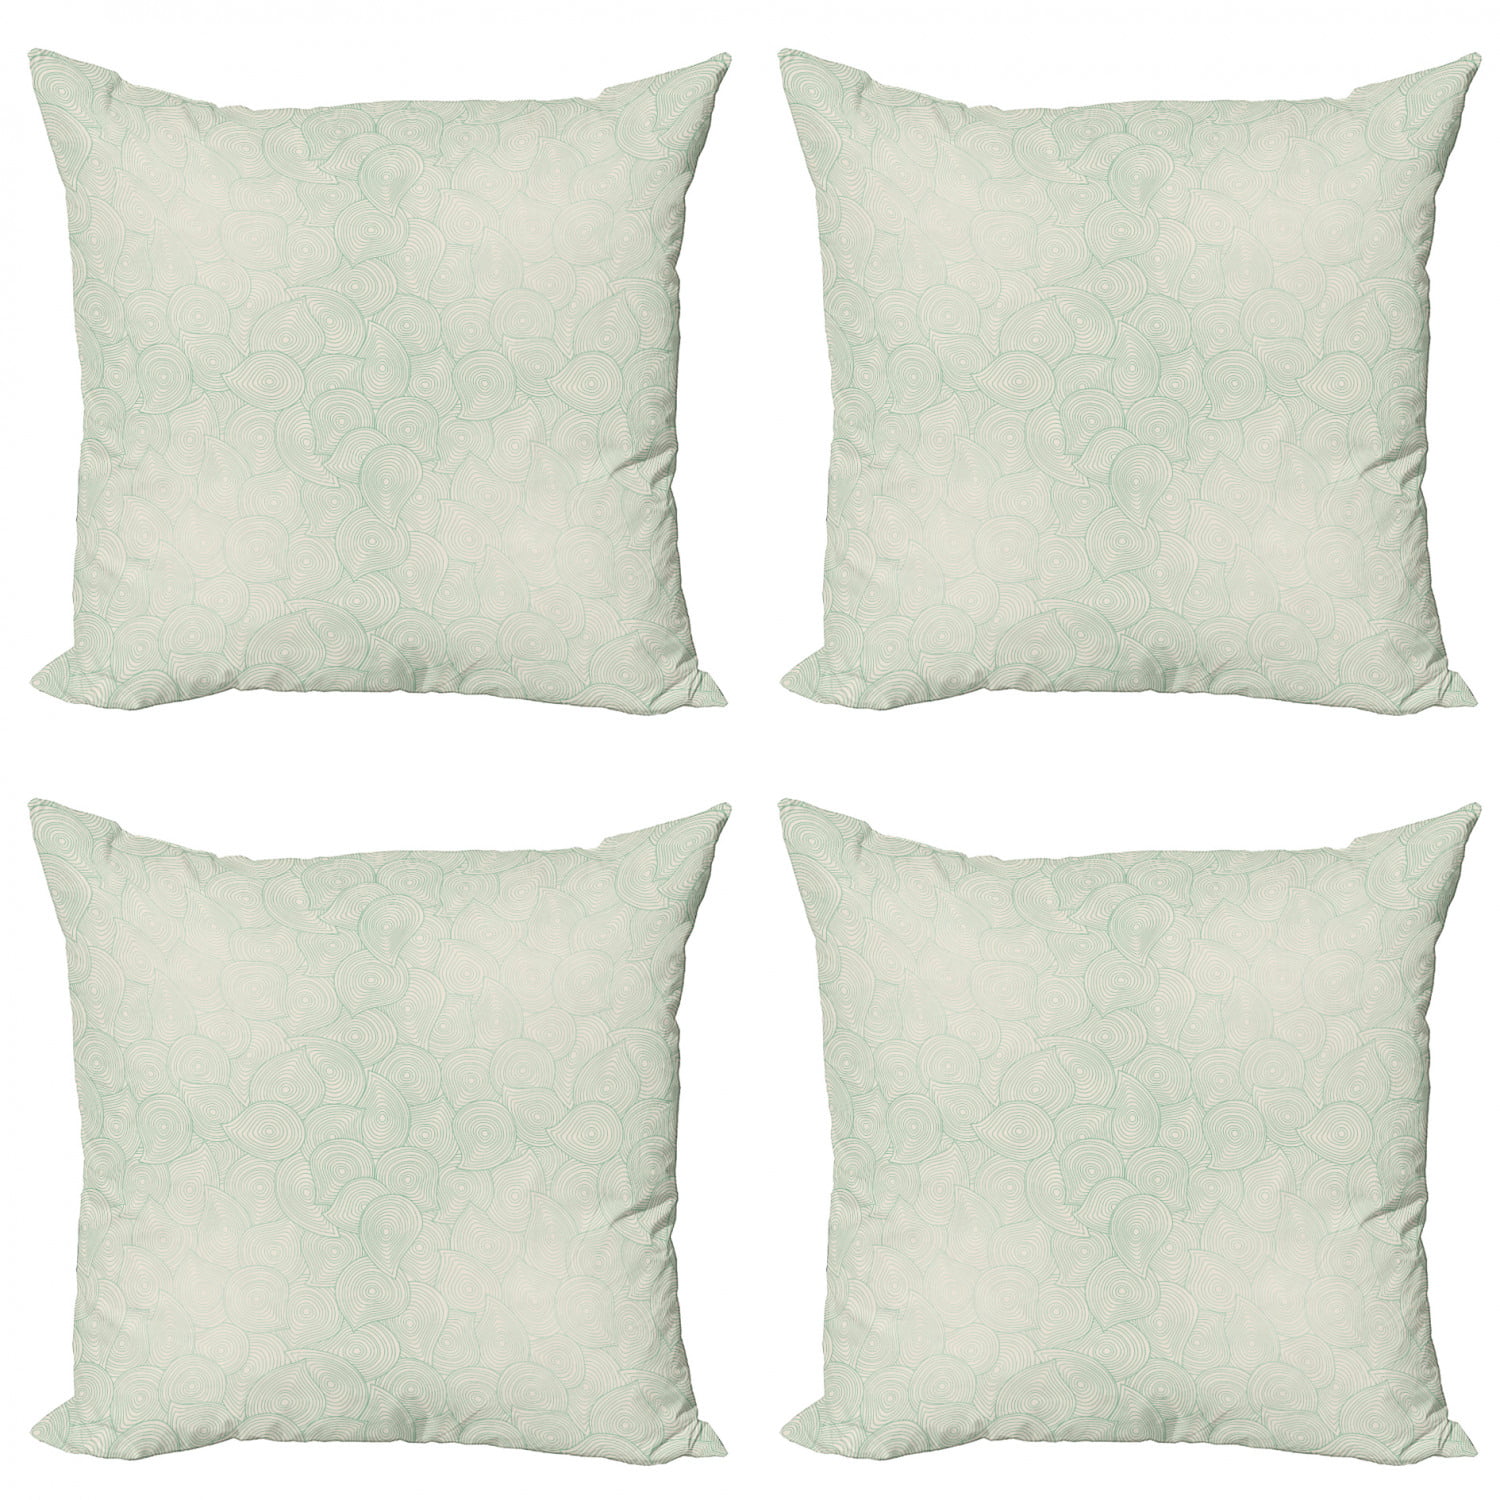 Geometric lumbar throw pillow Modernist bedroom decor Abstract rectangular modern art couch cushion